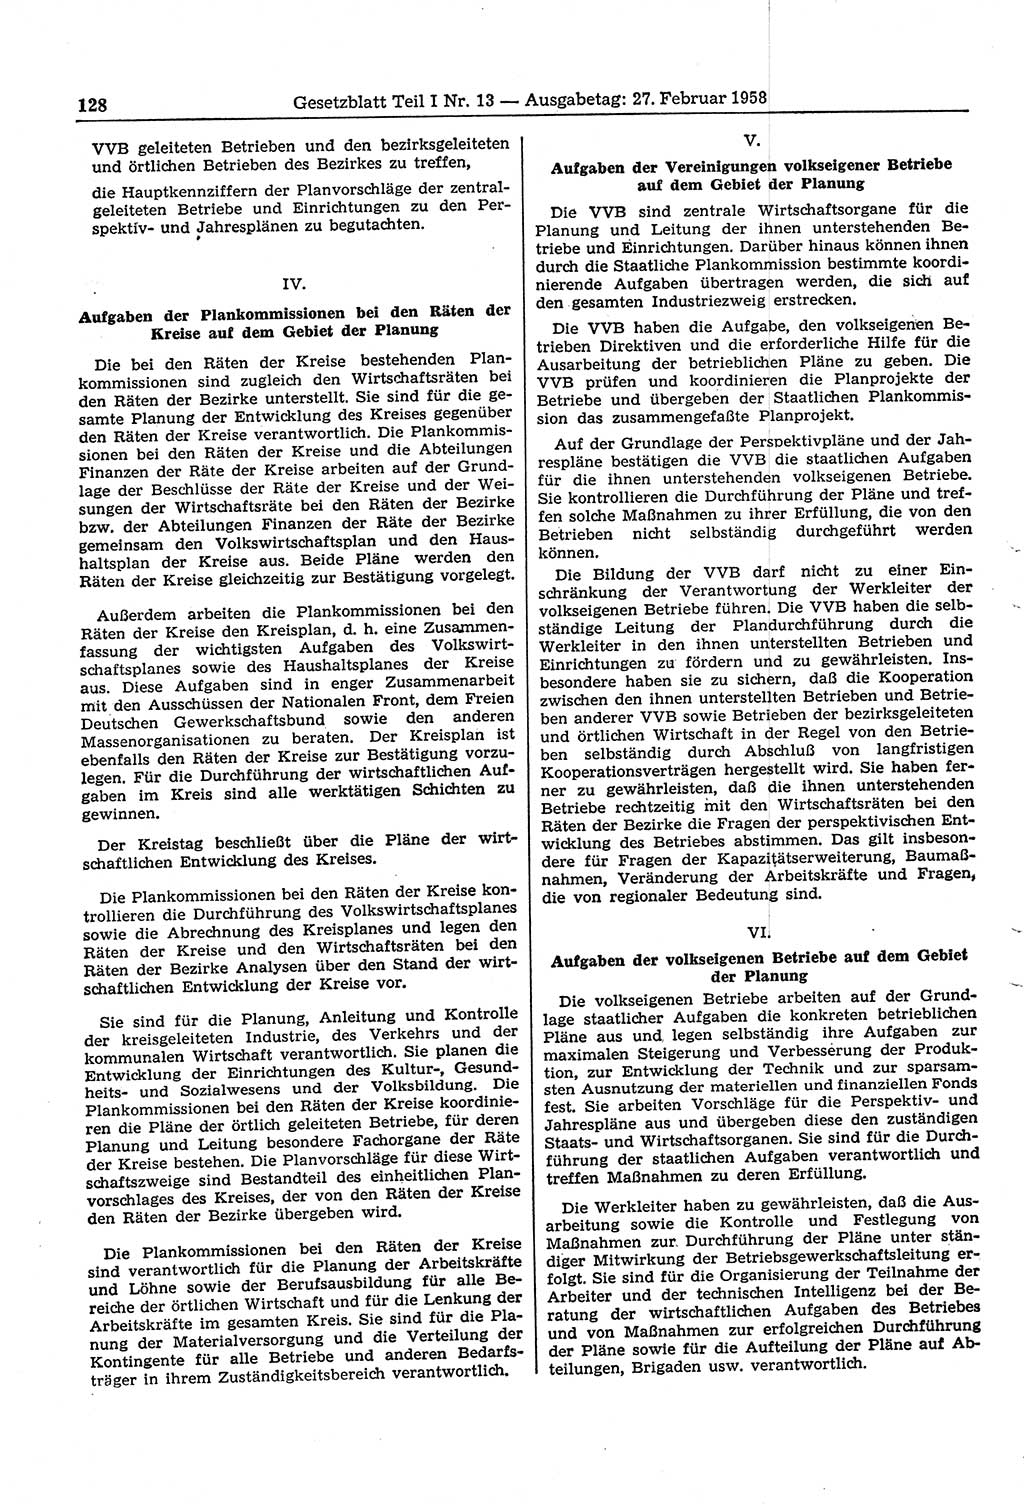 Gesetzblatt (GBl.) der Deutschen Demokratischen Republik (DDR) Teil Ⅰ 1958, Seite 128 (GBl. DDR Ⅰ 1958, S. 128)